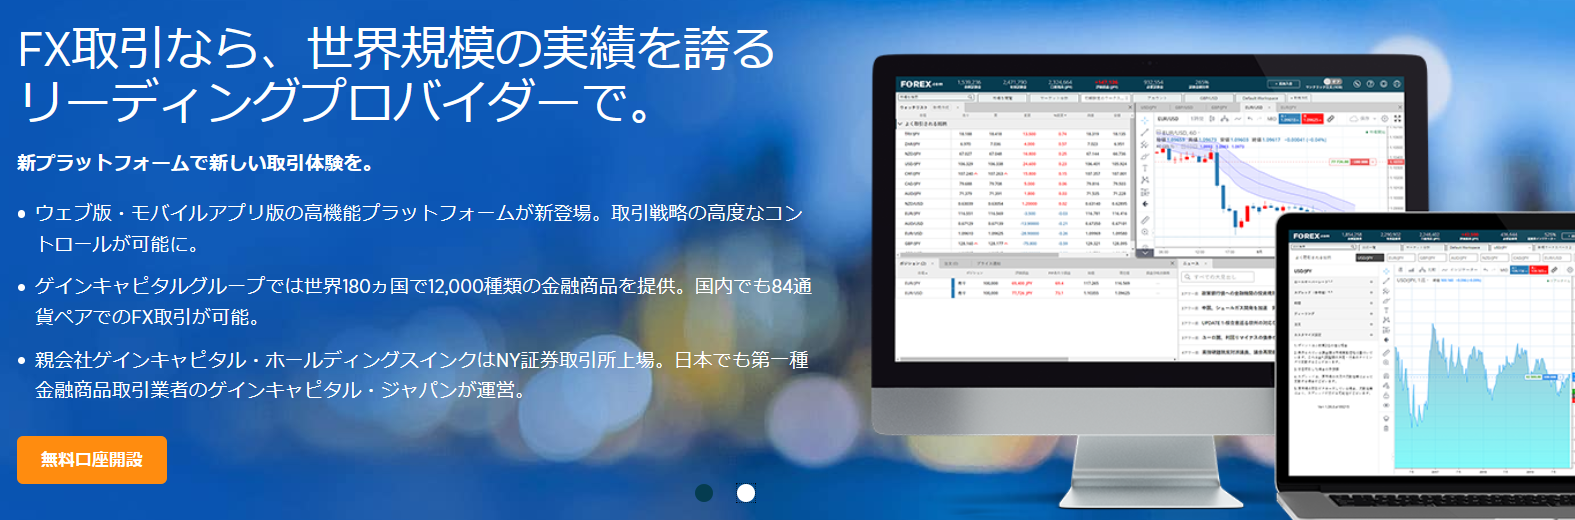 forex.com 評判_トップのイメージ画像